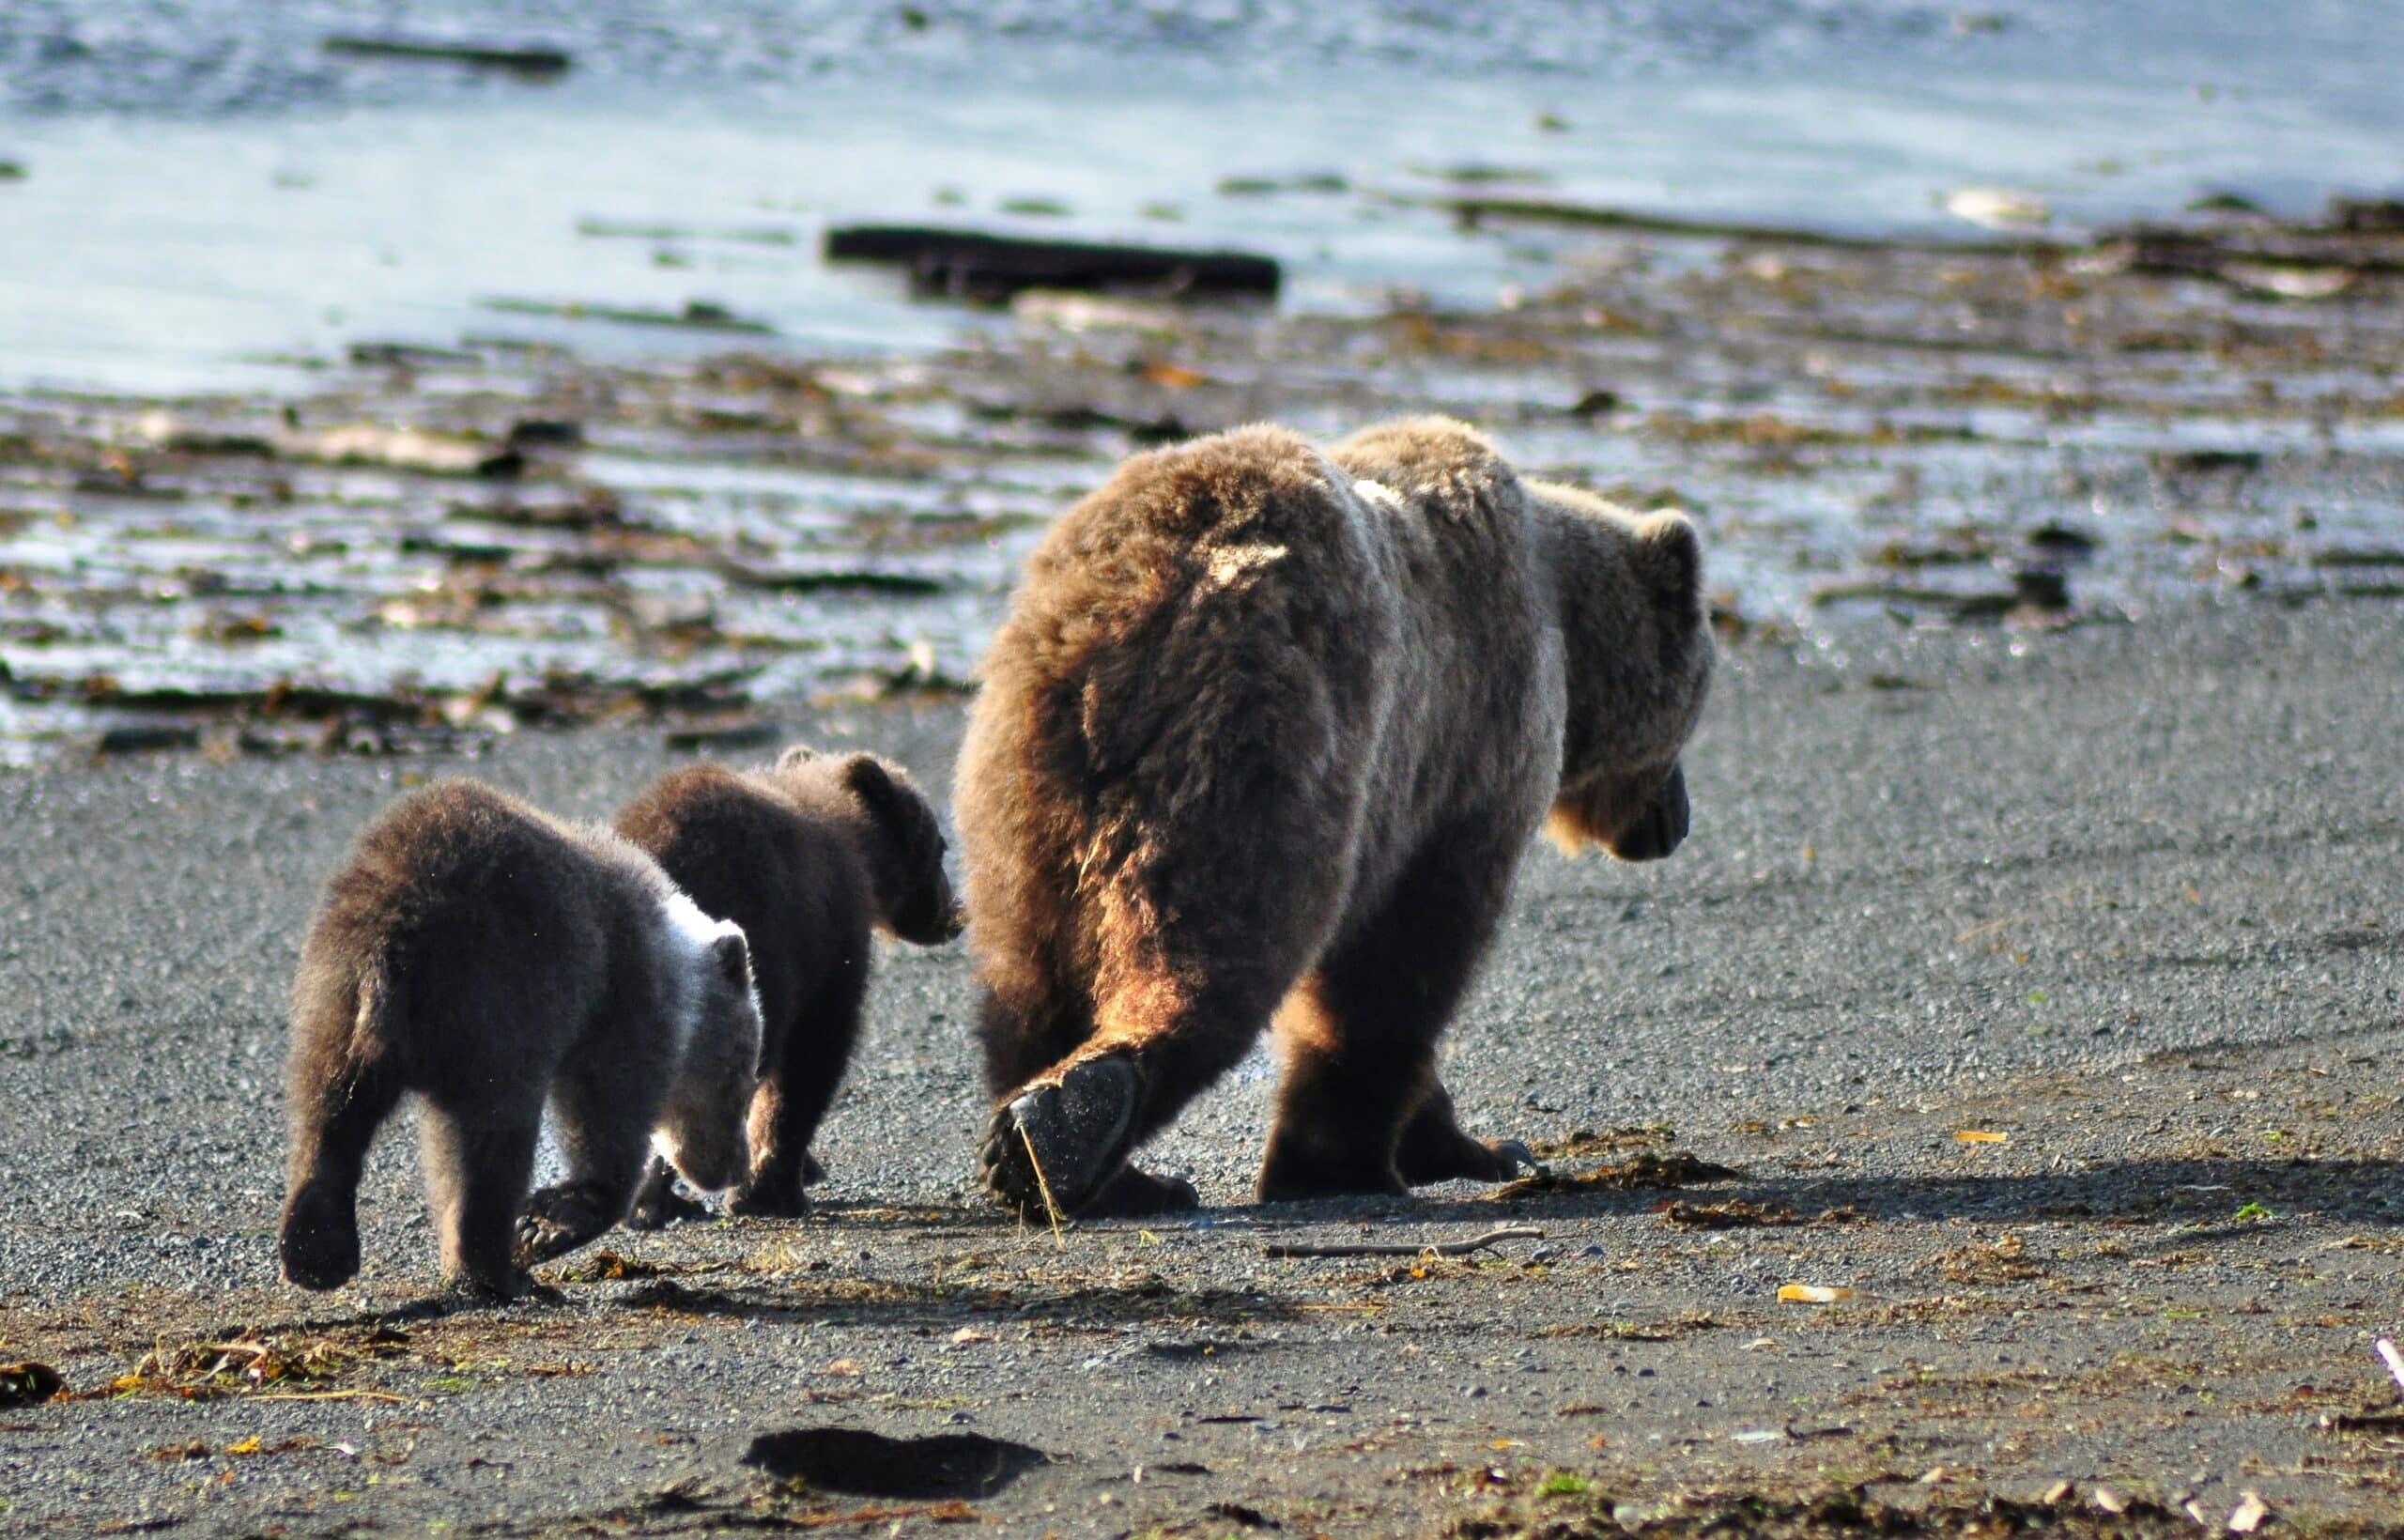 Three bears walk along the shore